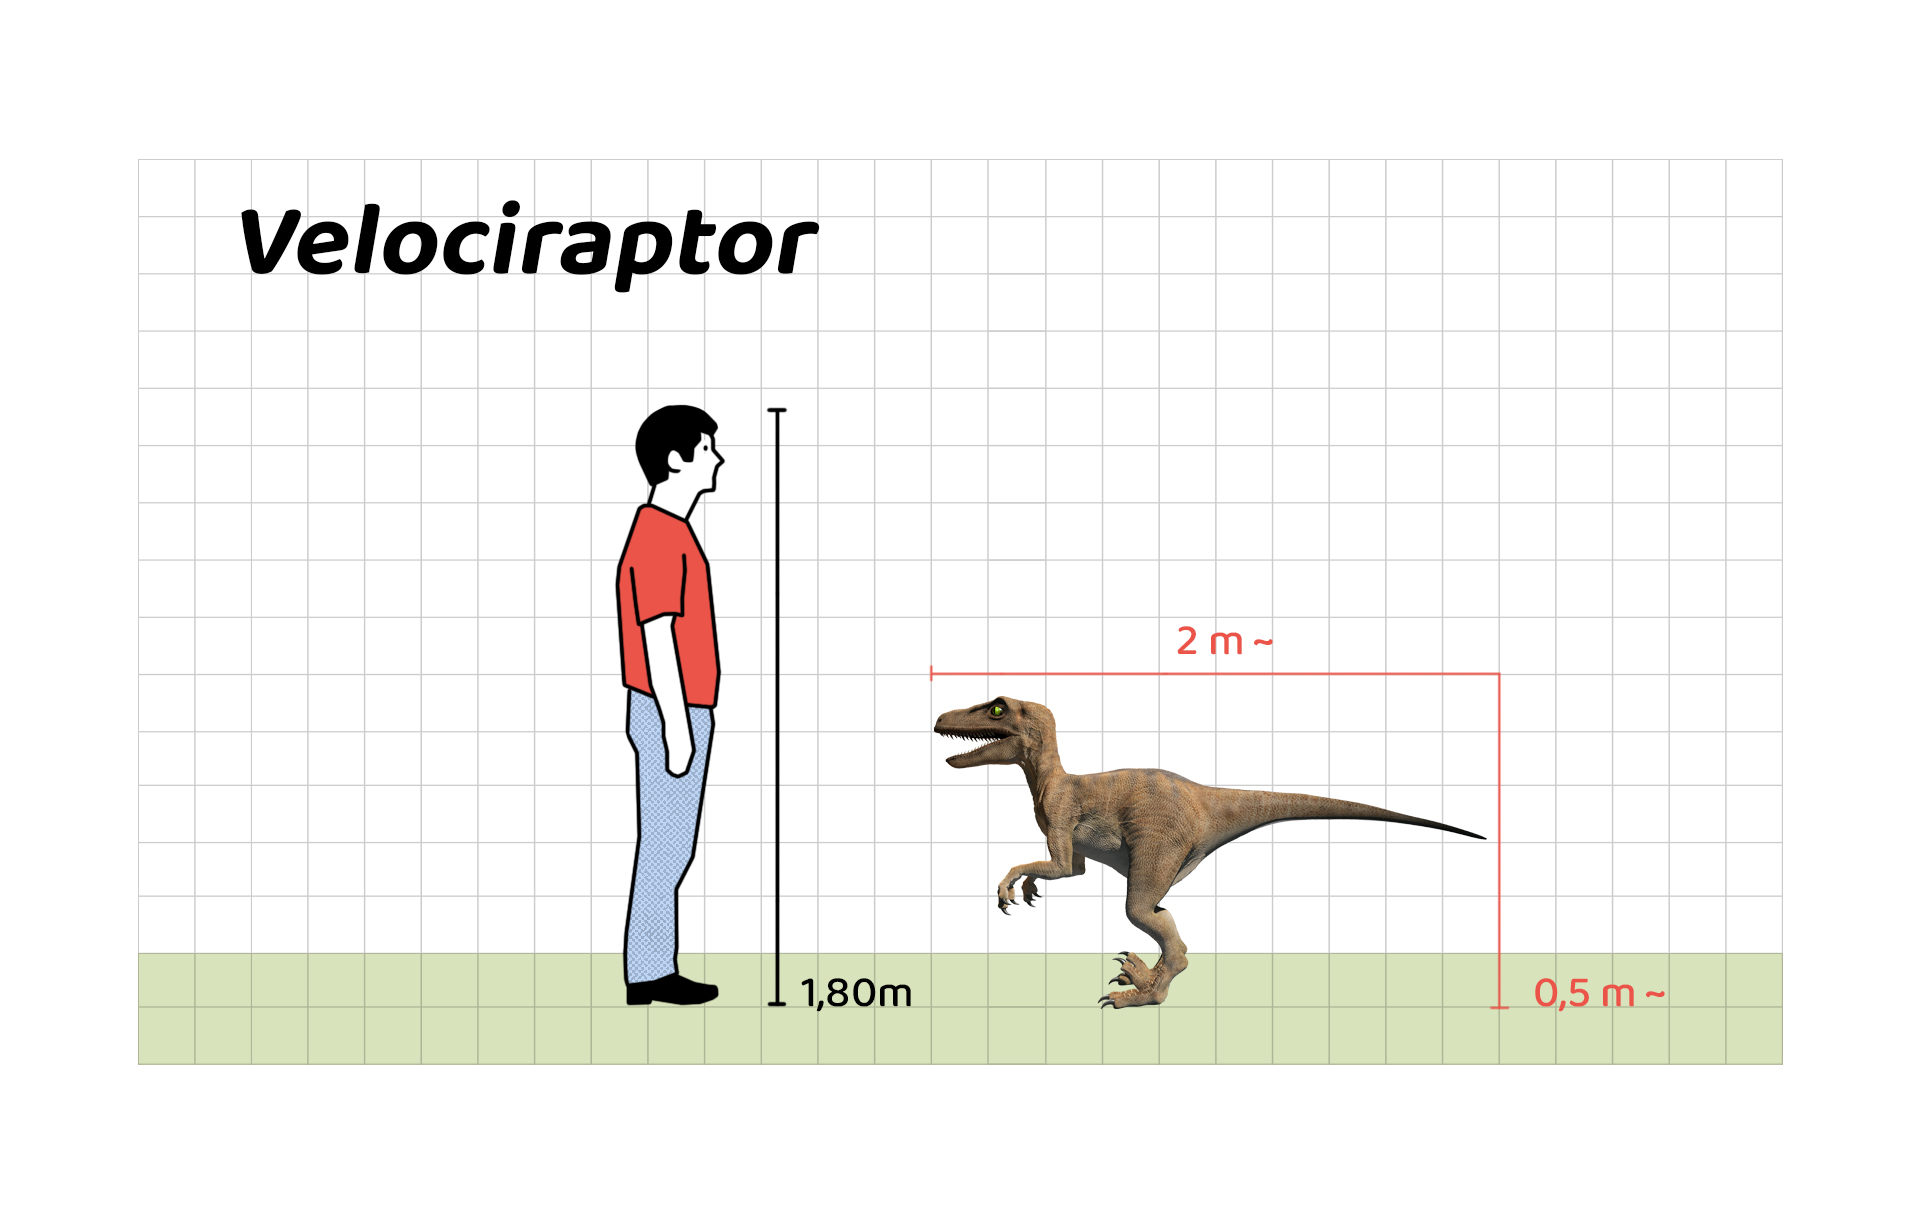 İnsan boyu ile Velociraptor’un büyüklüğünün karşılaştırılması